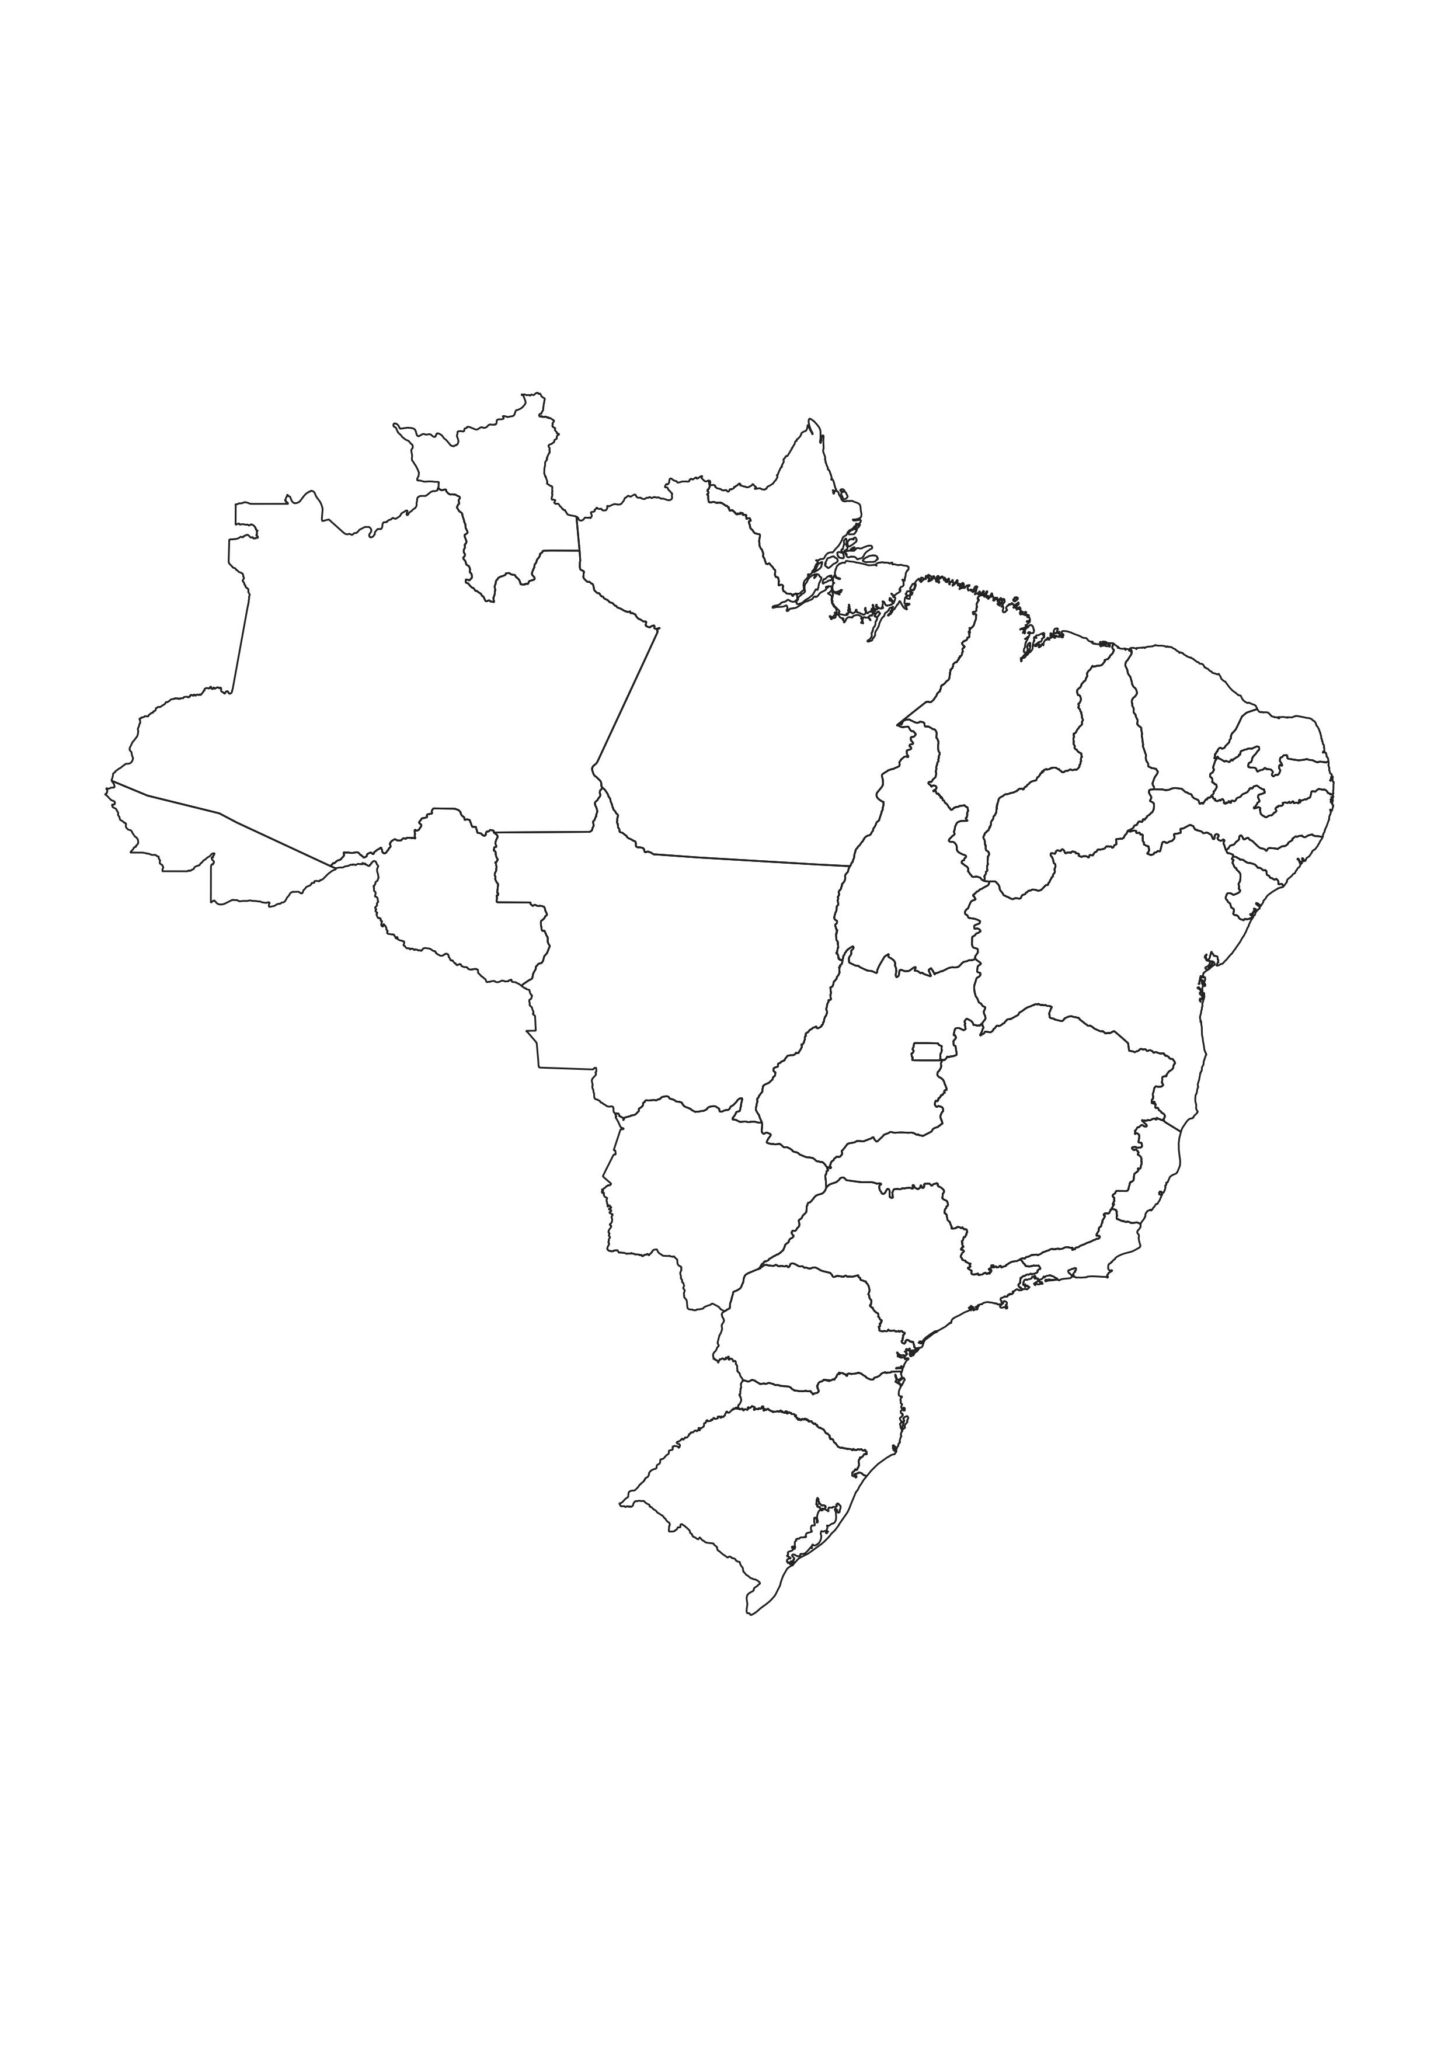 Mapa dos estados brasileiros em preto e branco (para colorir)